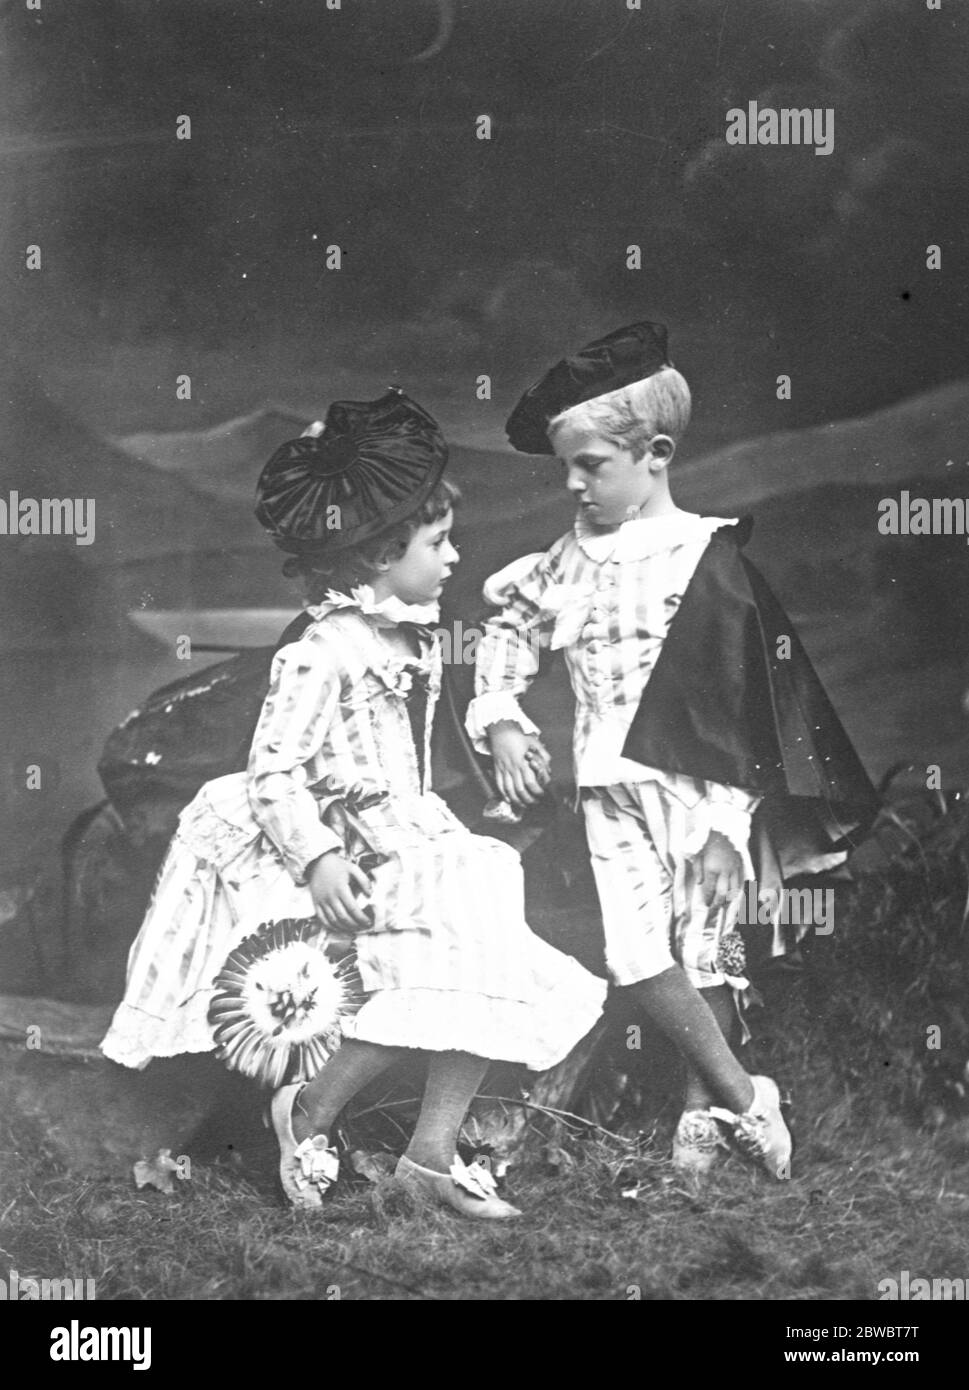 König von Italien, um 25. Jahrestag seiner Aufnahme zu feiern, photogaphed hier bei einem jungen Prinzen. Juni 1925 Stockfoto